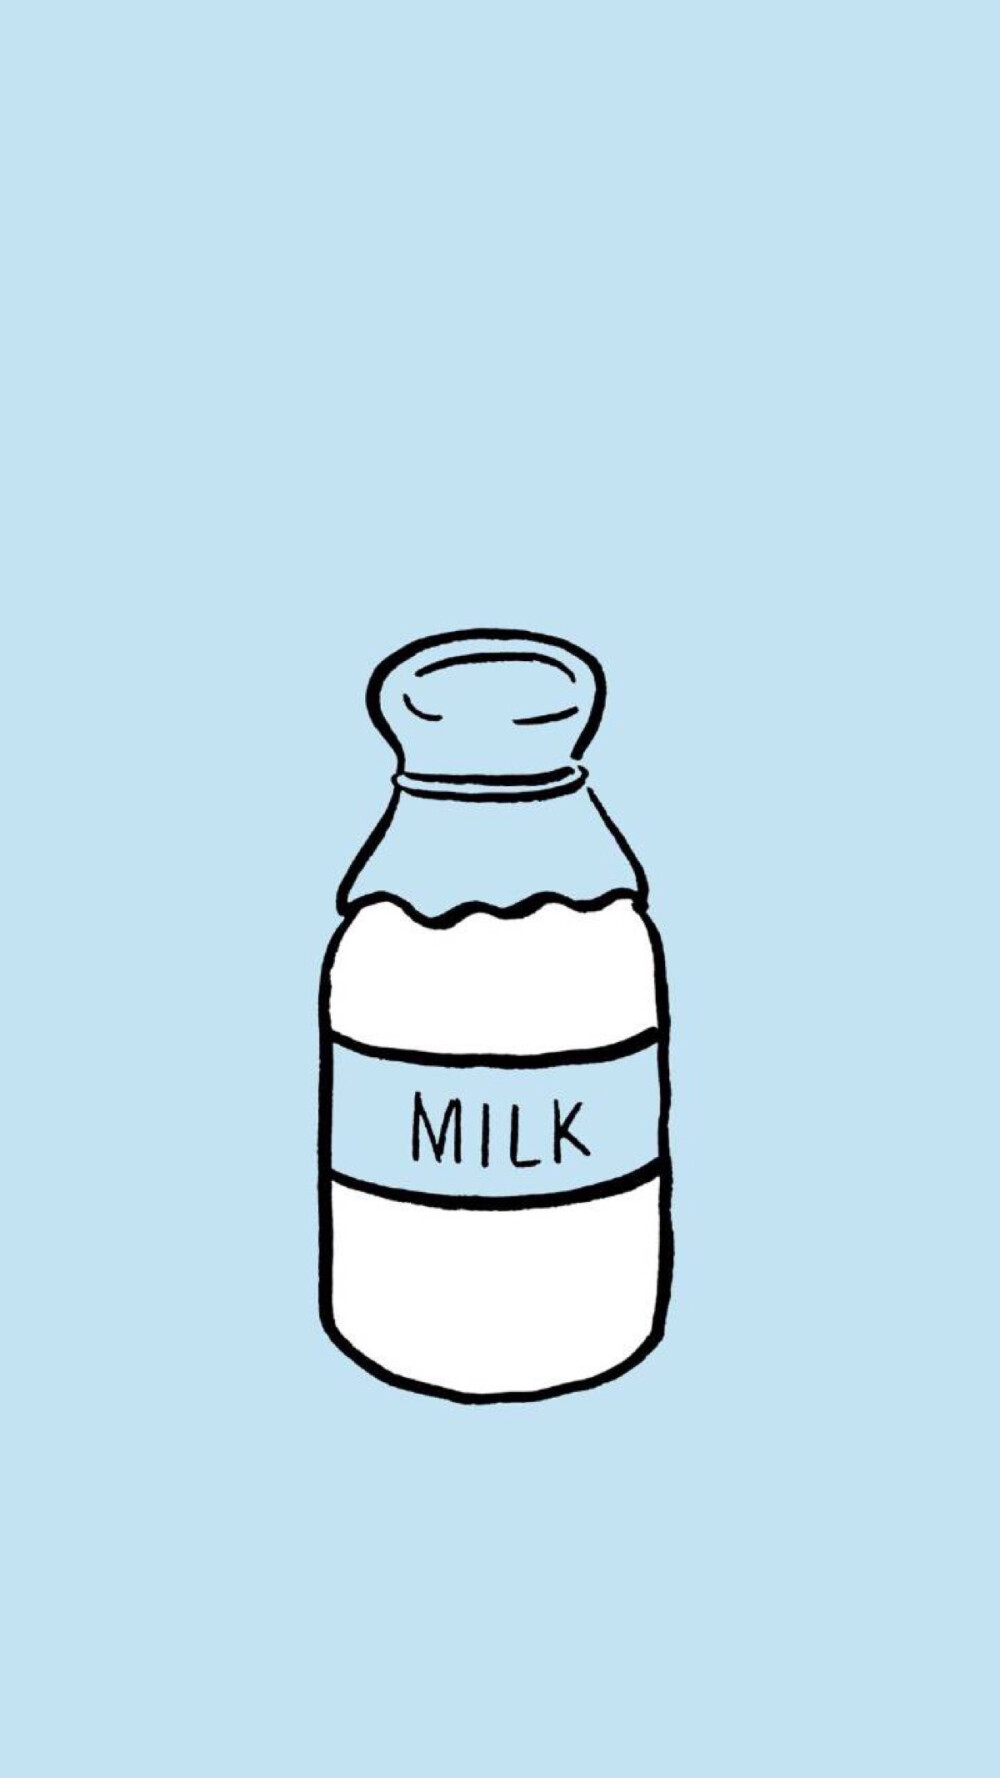 牛奶的壁纸图片可爱图片